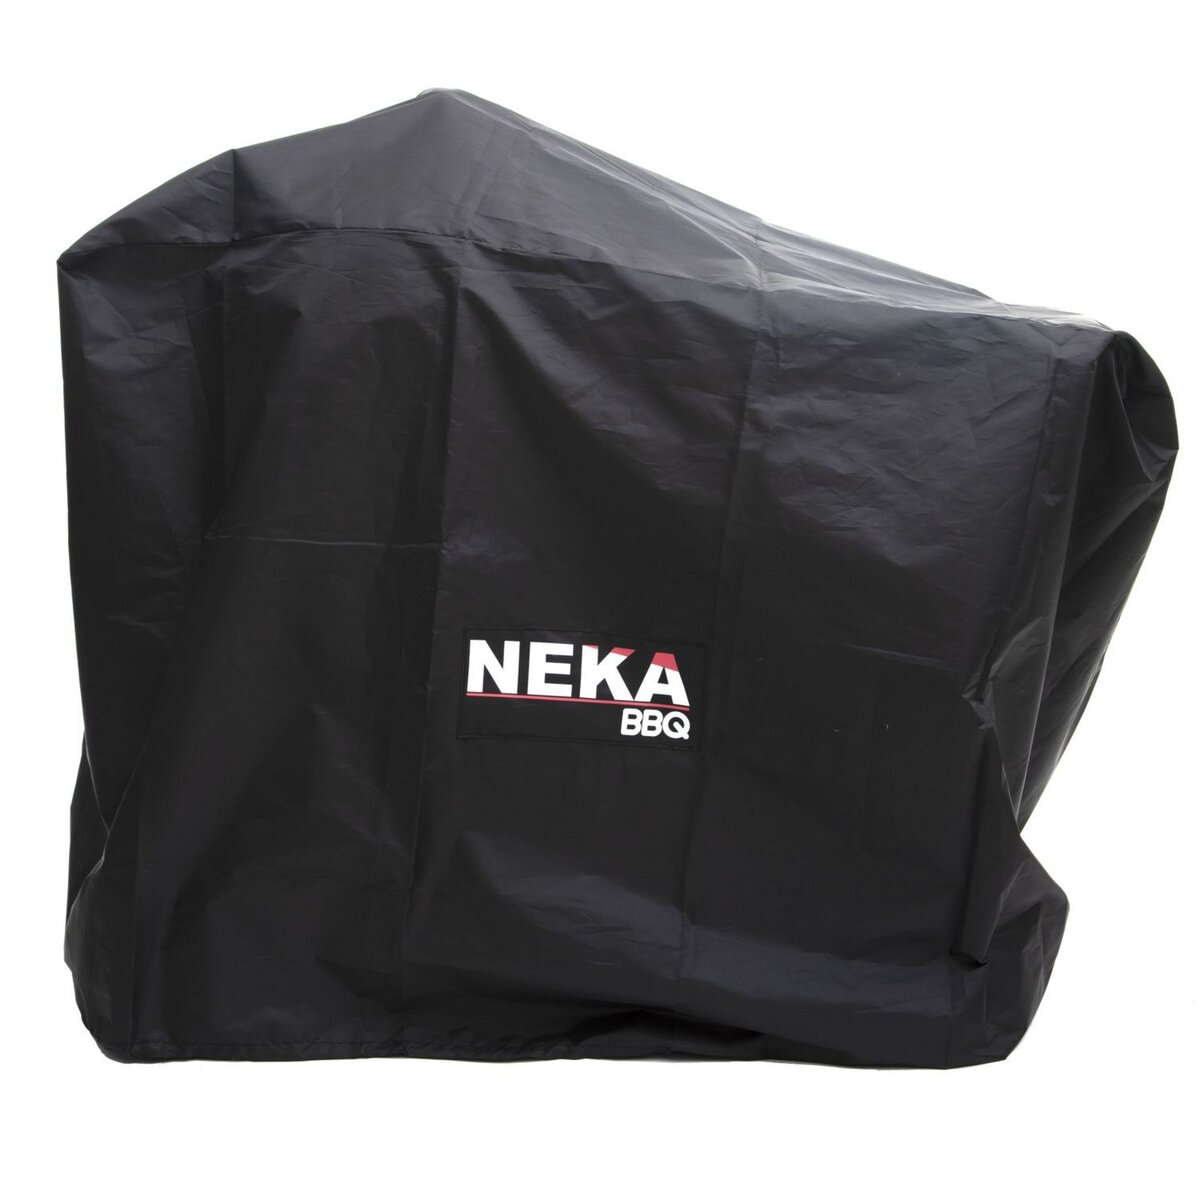 NEKA Housse de protection pour barbecue - L. 125 x H. 90 cm - Noir